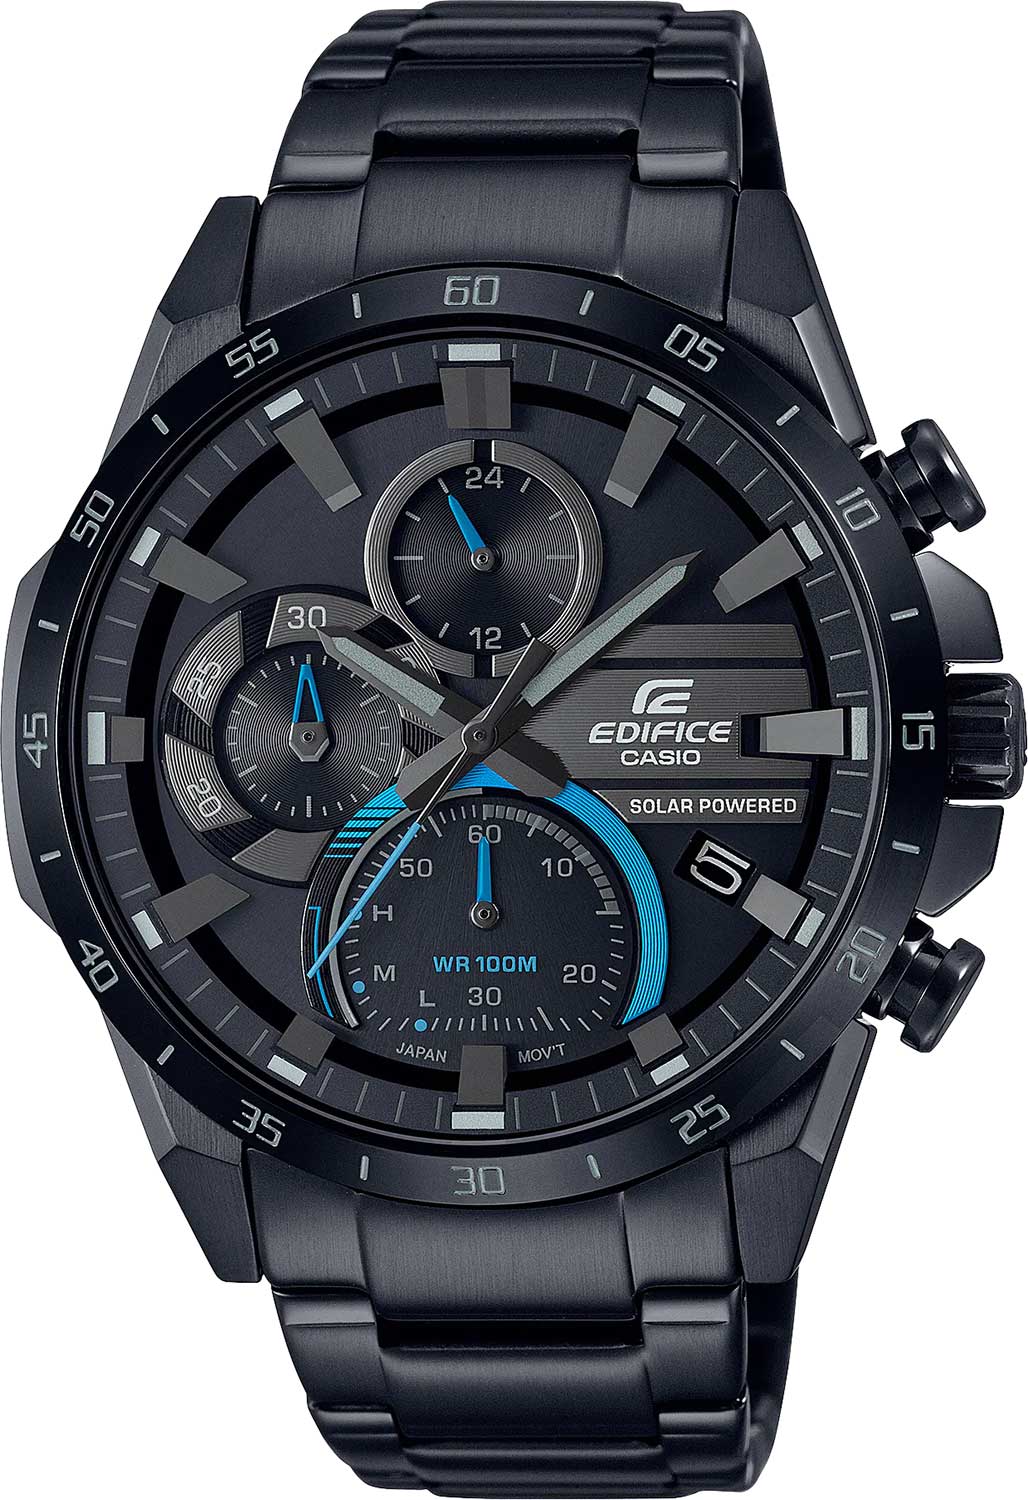 Наручные часы Casio Edifice EQS-940DC-1B — купить в интернет-магазине AllTime.ru по лучшей цене, отзывы, фото, характеристики, инструкция, описание